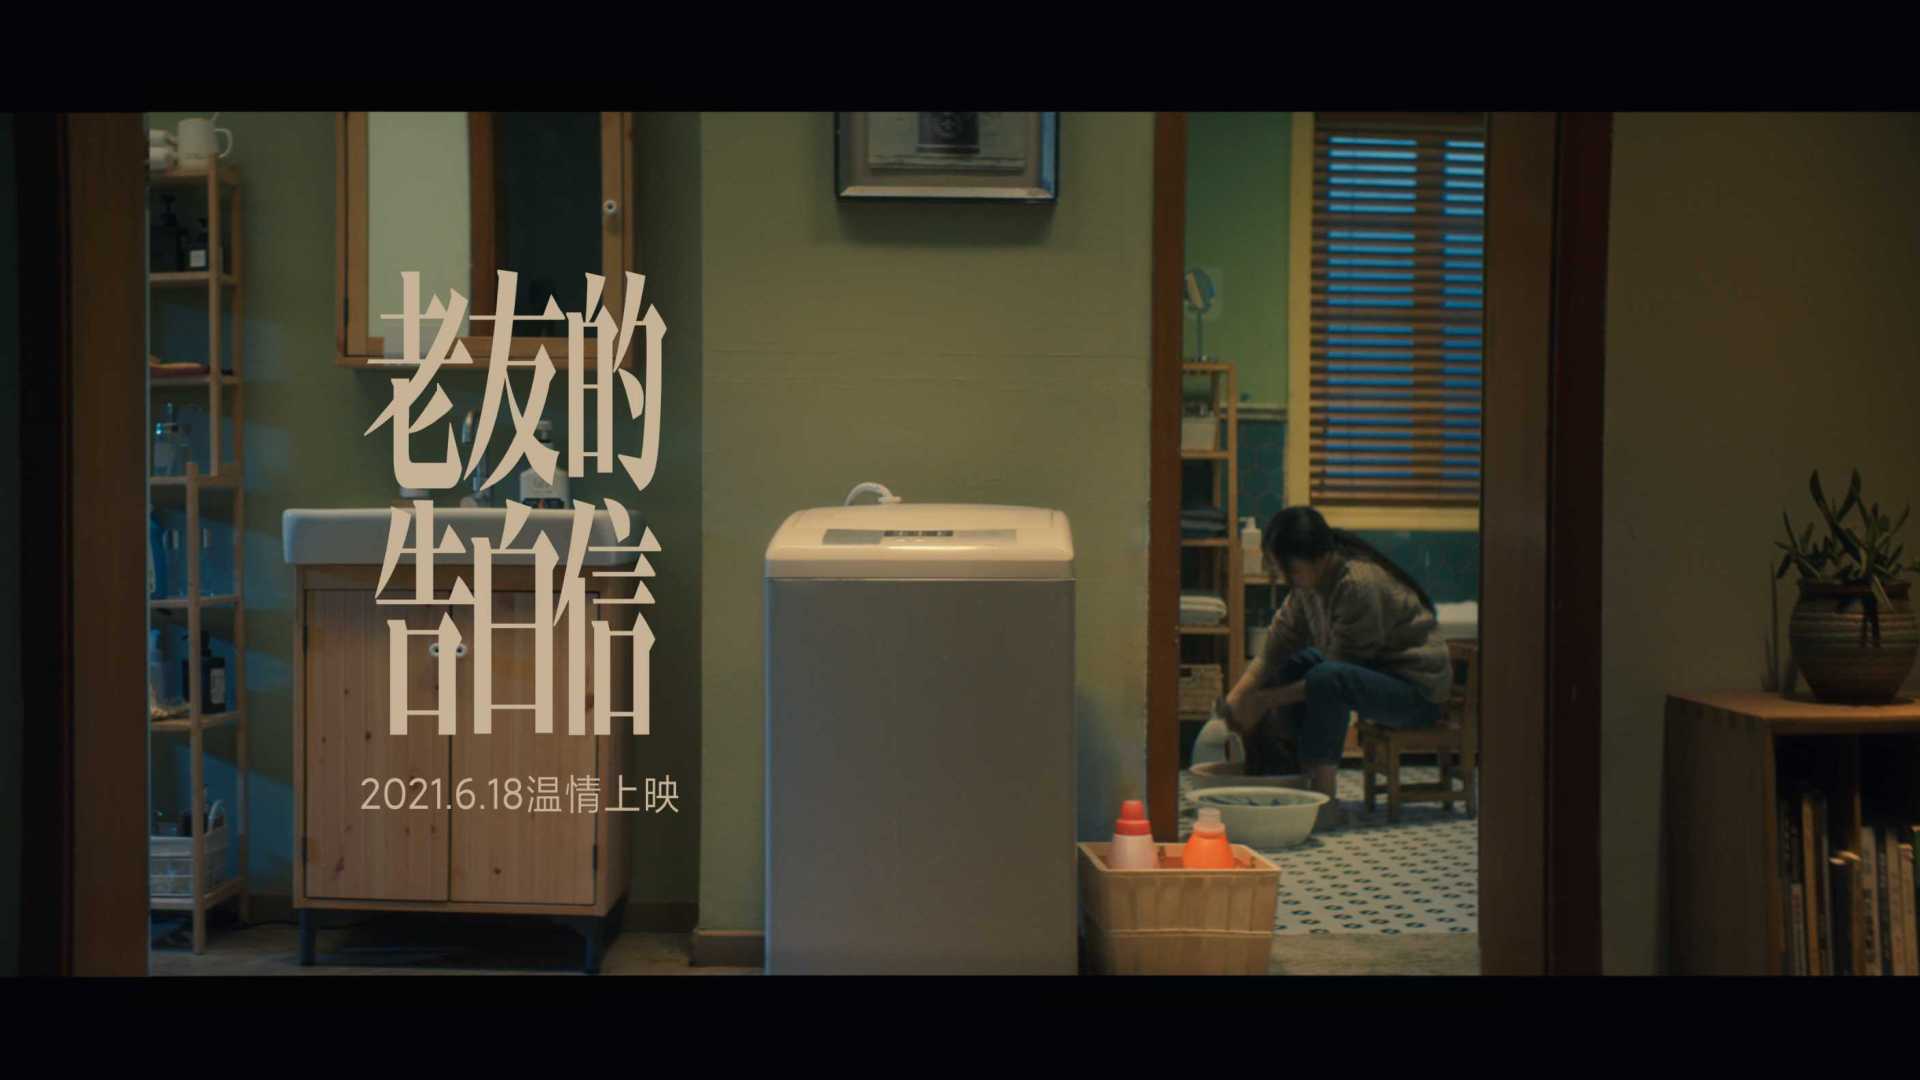 小米618逆向催泪系列广告《老友的告白信》洗衣机篇